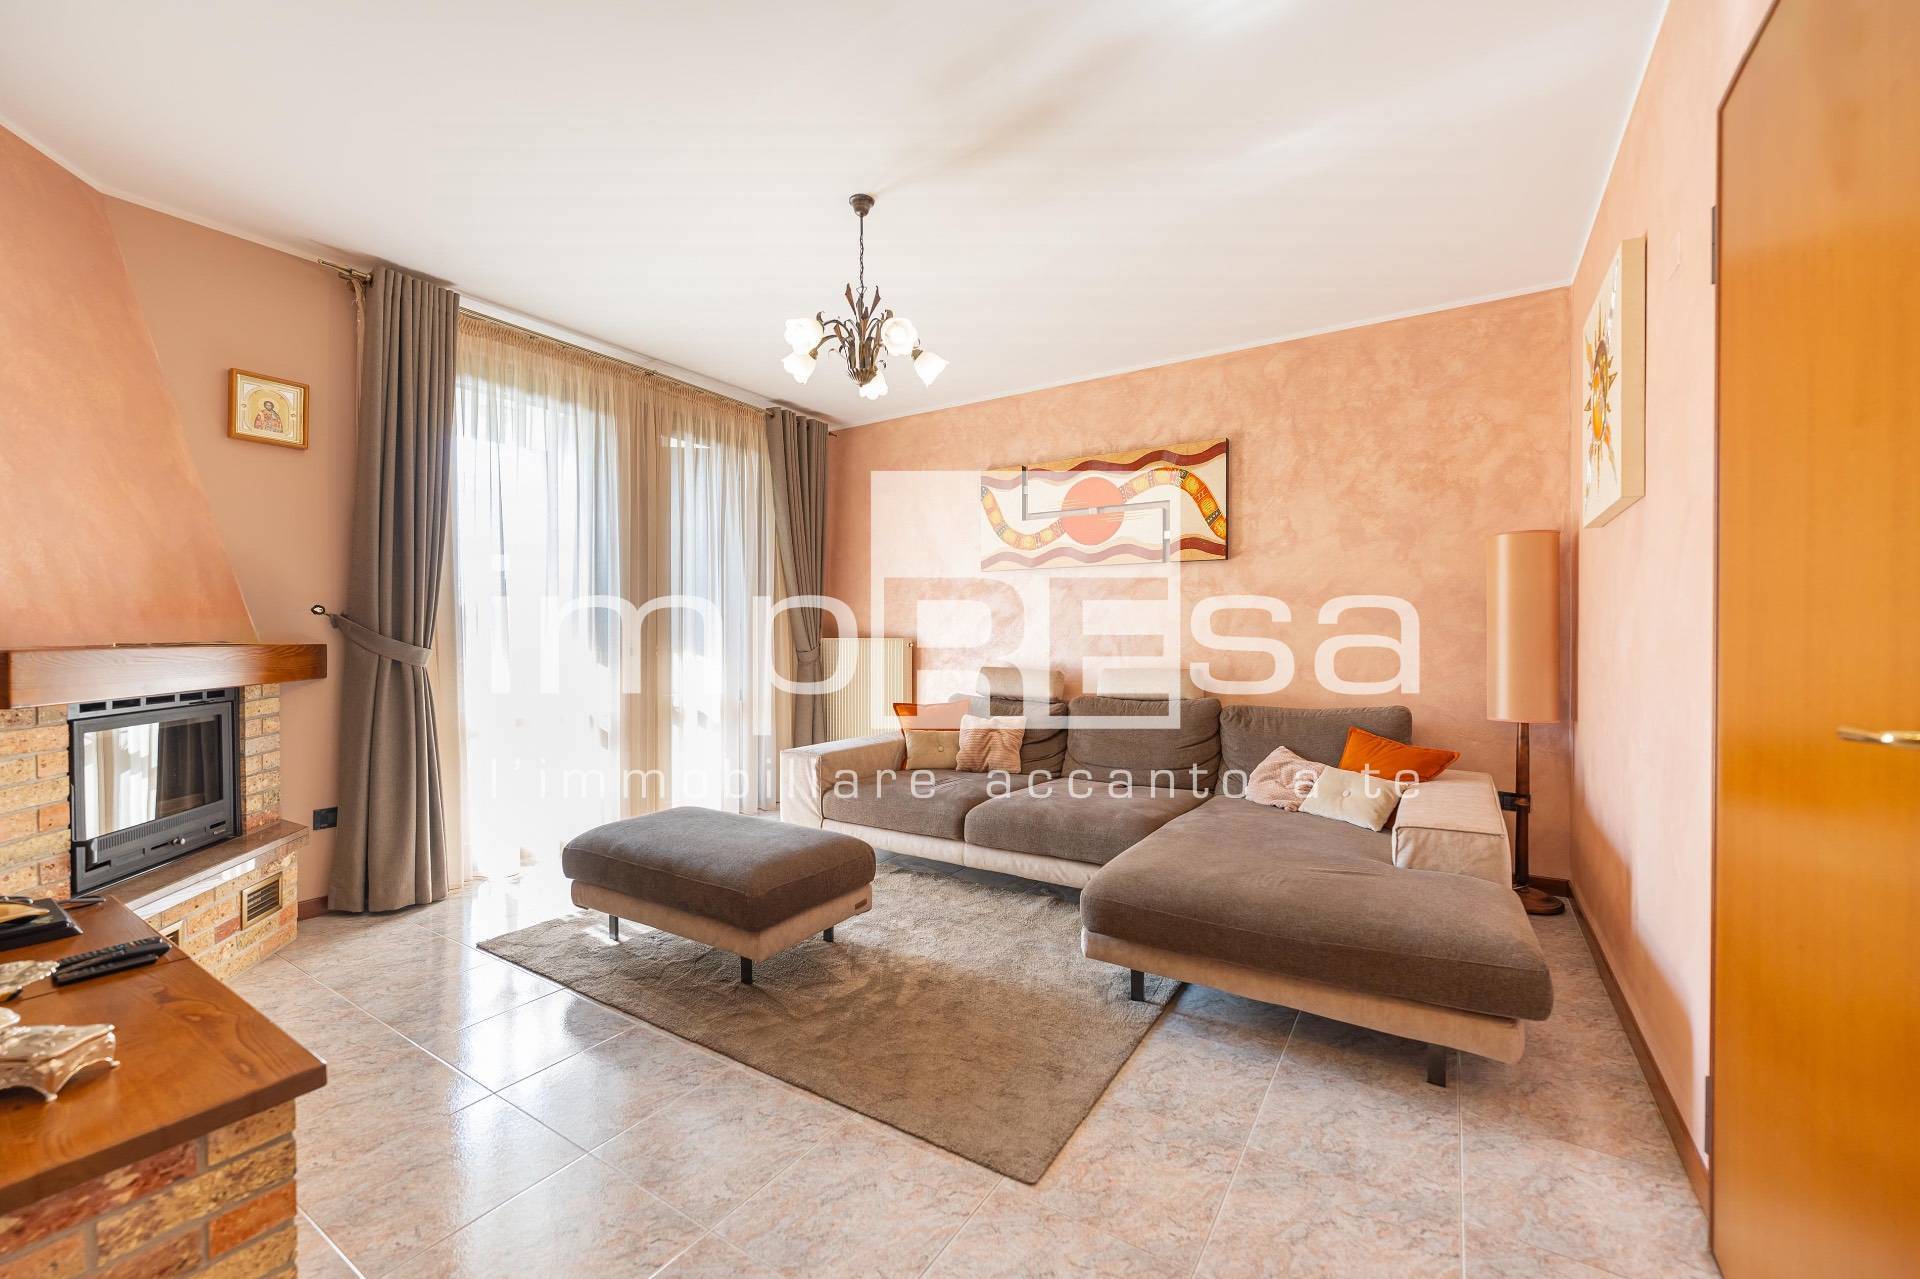 Appartamento in vendita a Pasiano di Pordenone, 3 locali, prezzo € 235.000 | PortaleAgenzieImmobiliari.it